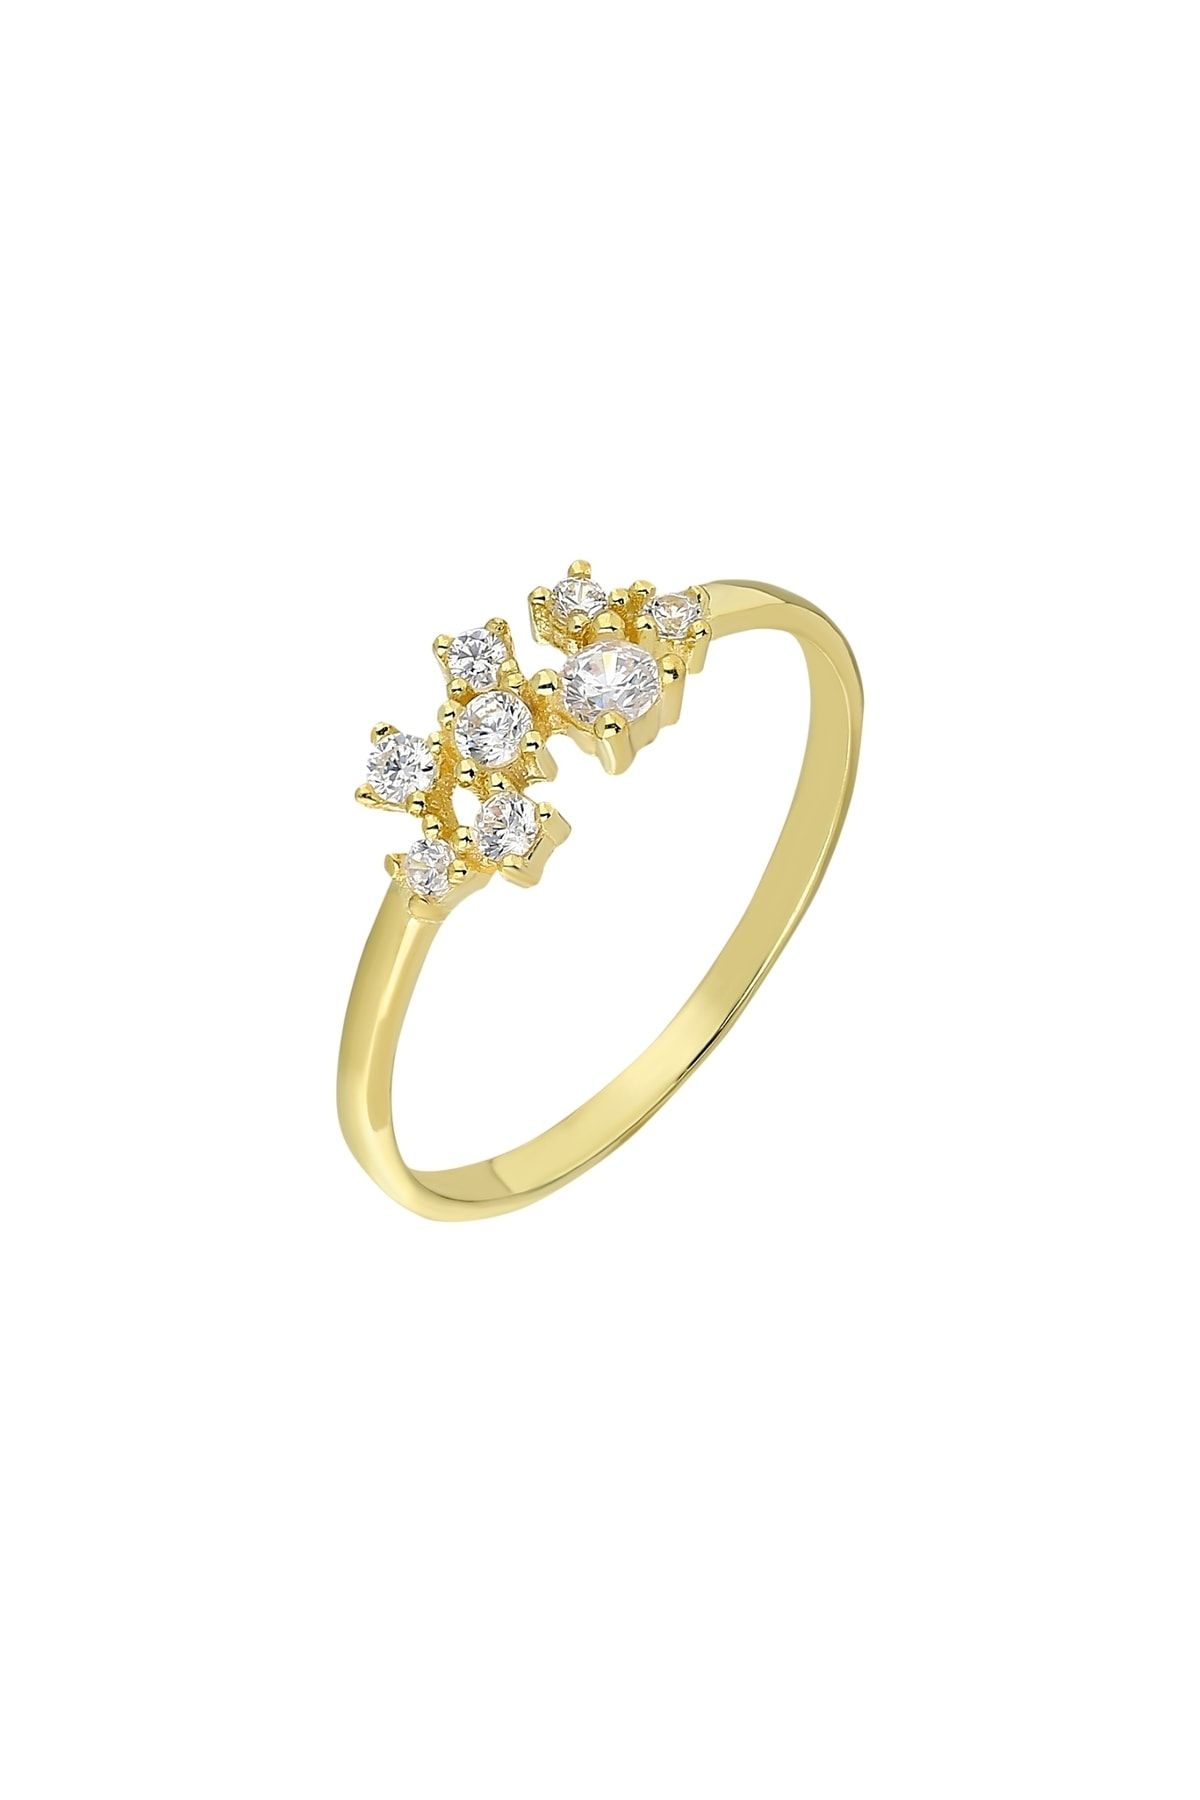 Chavin Sarı Taşlı Gümüş Kadın Yüzük Mini Eklem Yüzüğü Ed70sr